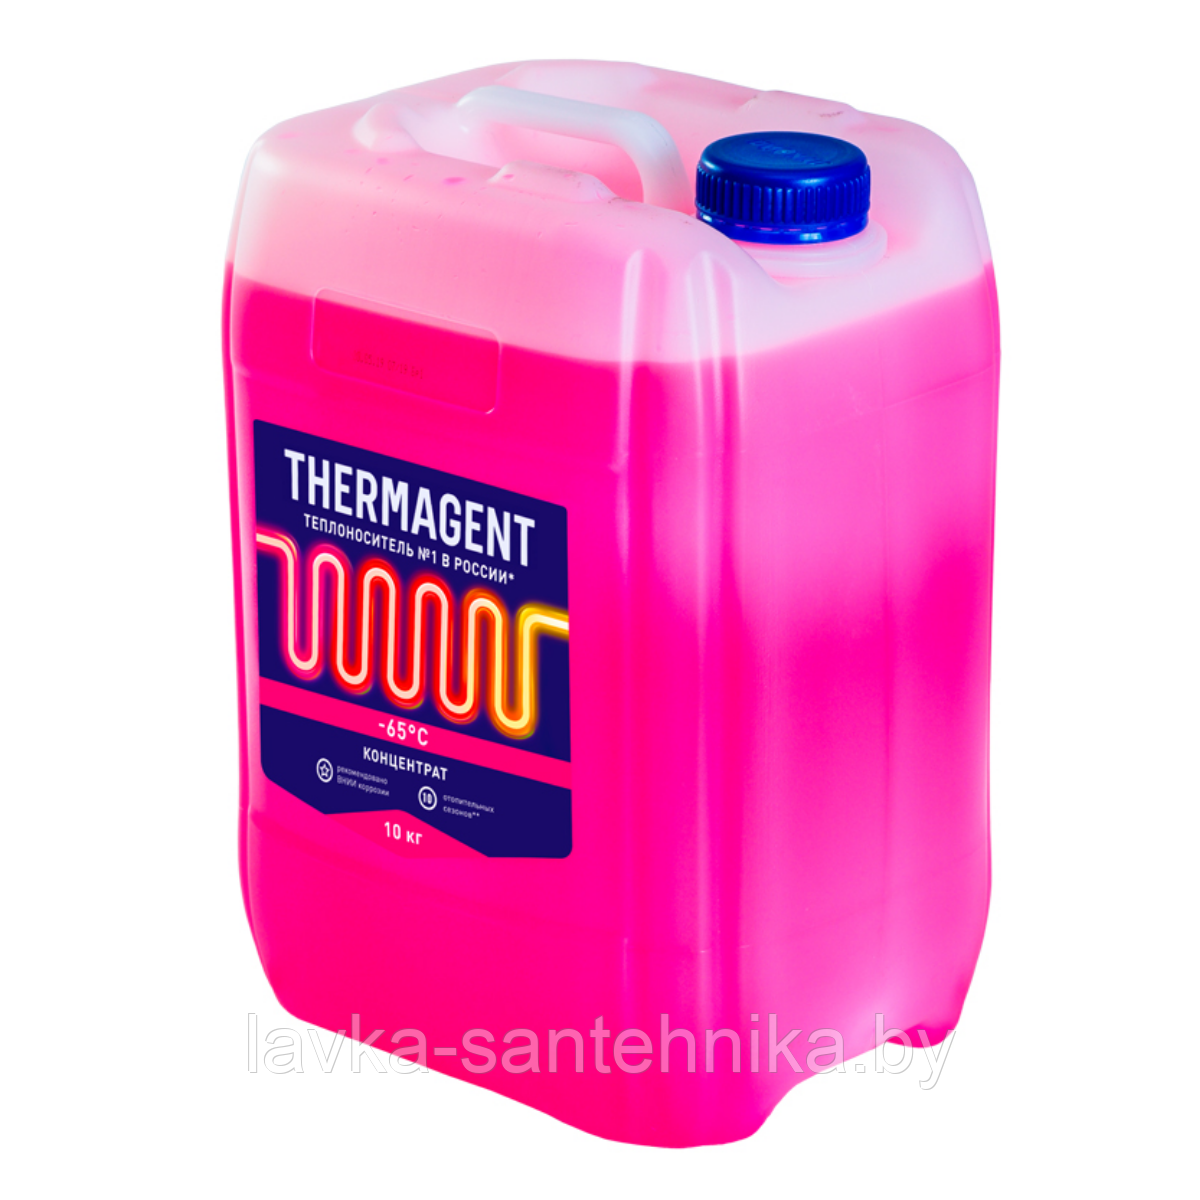 Теплоноситель концентрат Thermagent -65°C, 10 кг (срок службы: 10 сезонов)